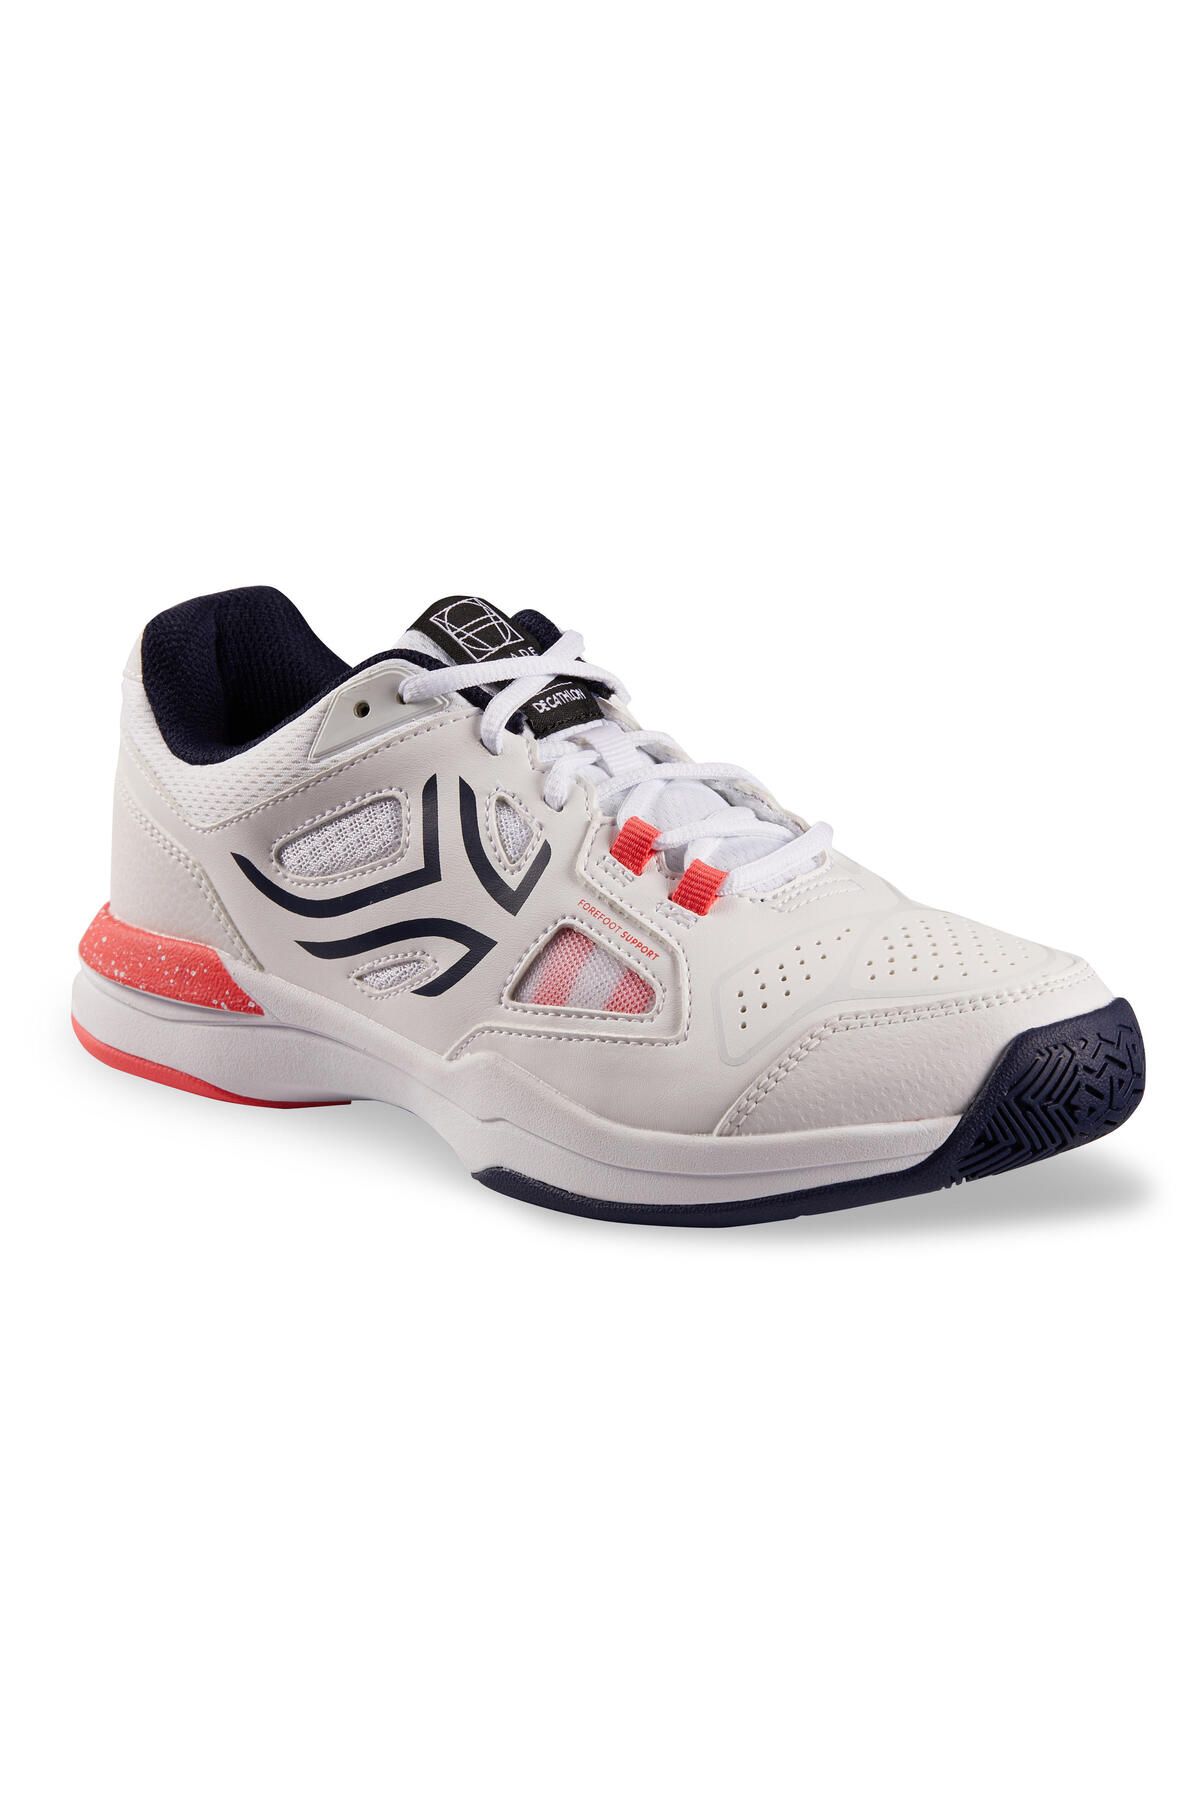 Decathlon Kadın Tenis Ayakkabısı - Beyaz - Ts500